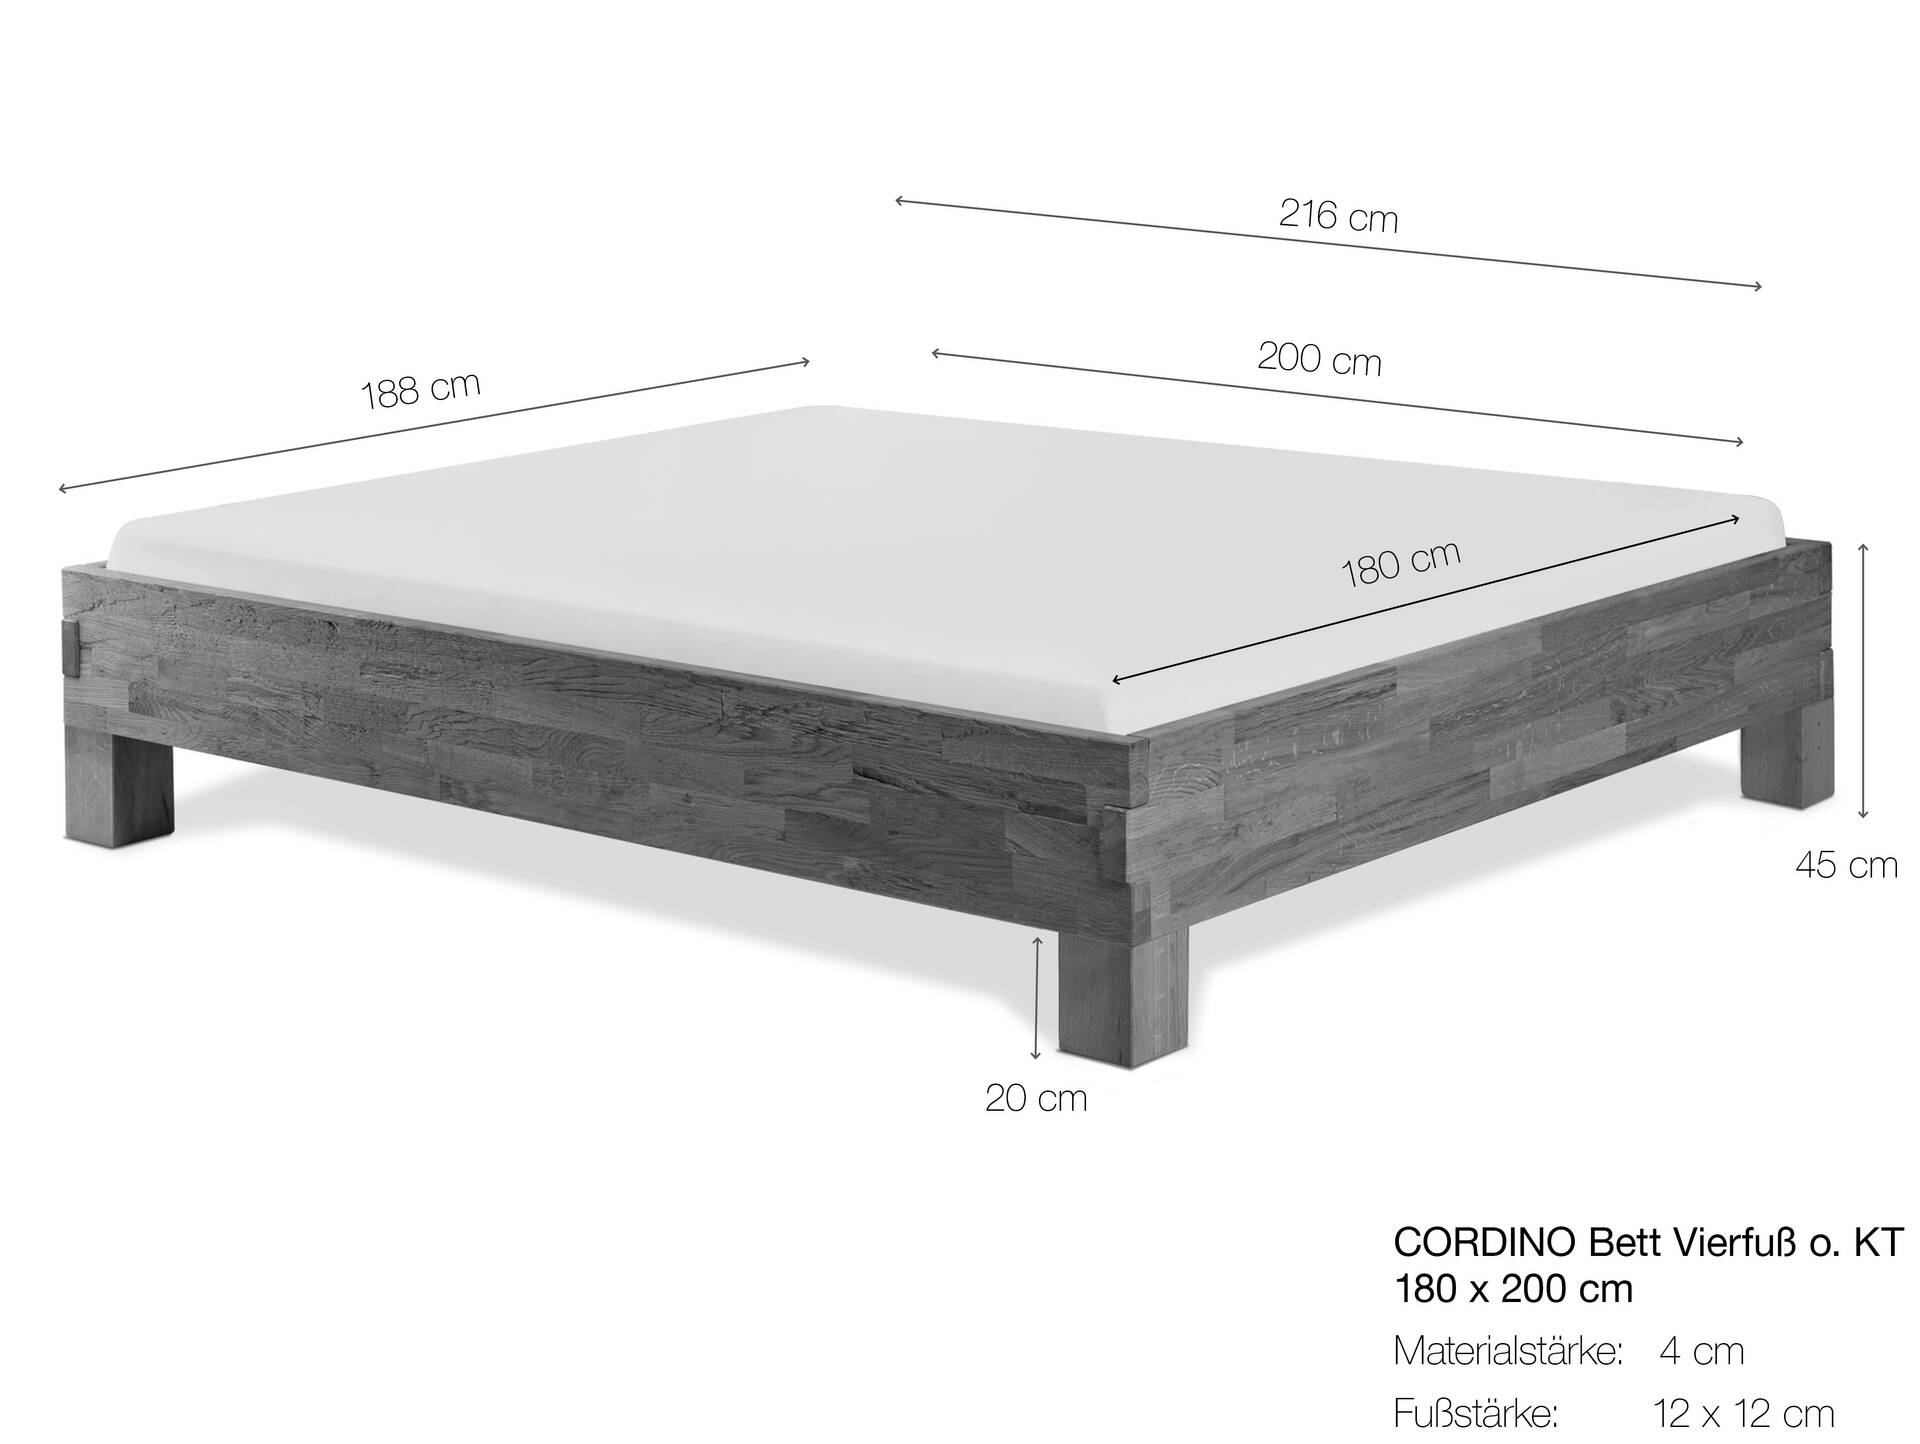 CORDINO 4-Fuß-Bett aus Eiche, Material Massivholz, mit/ohne Kopfteil 180 x 200 cm | Eiche unbehandelt | gehackt | ohne Kopfteil